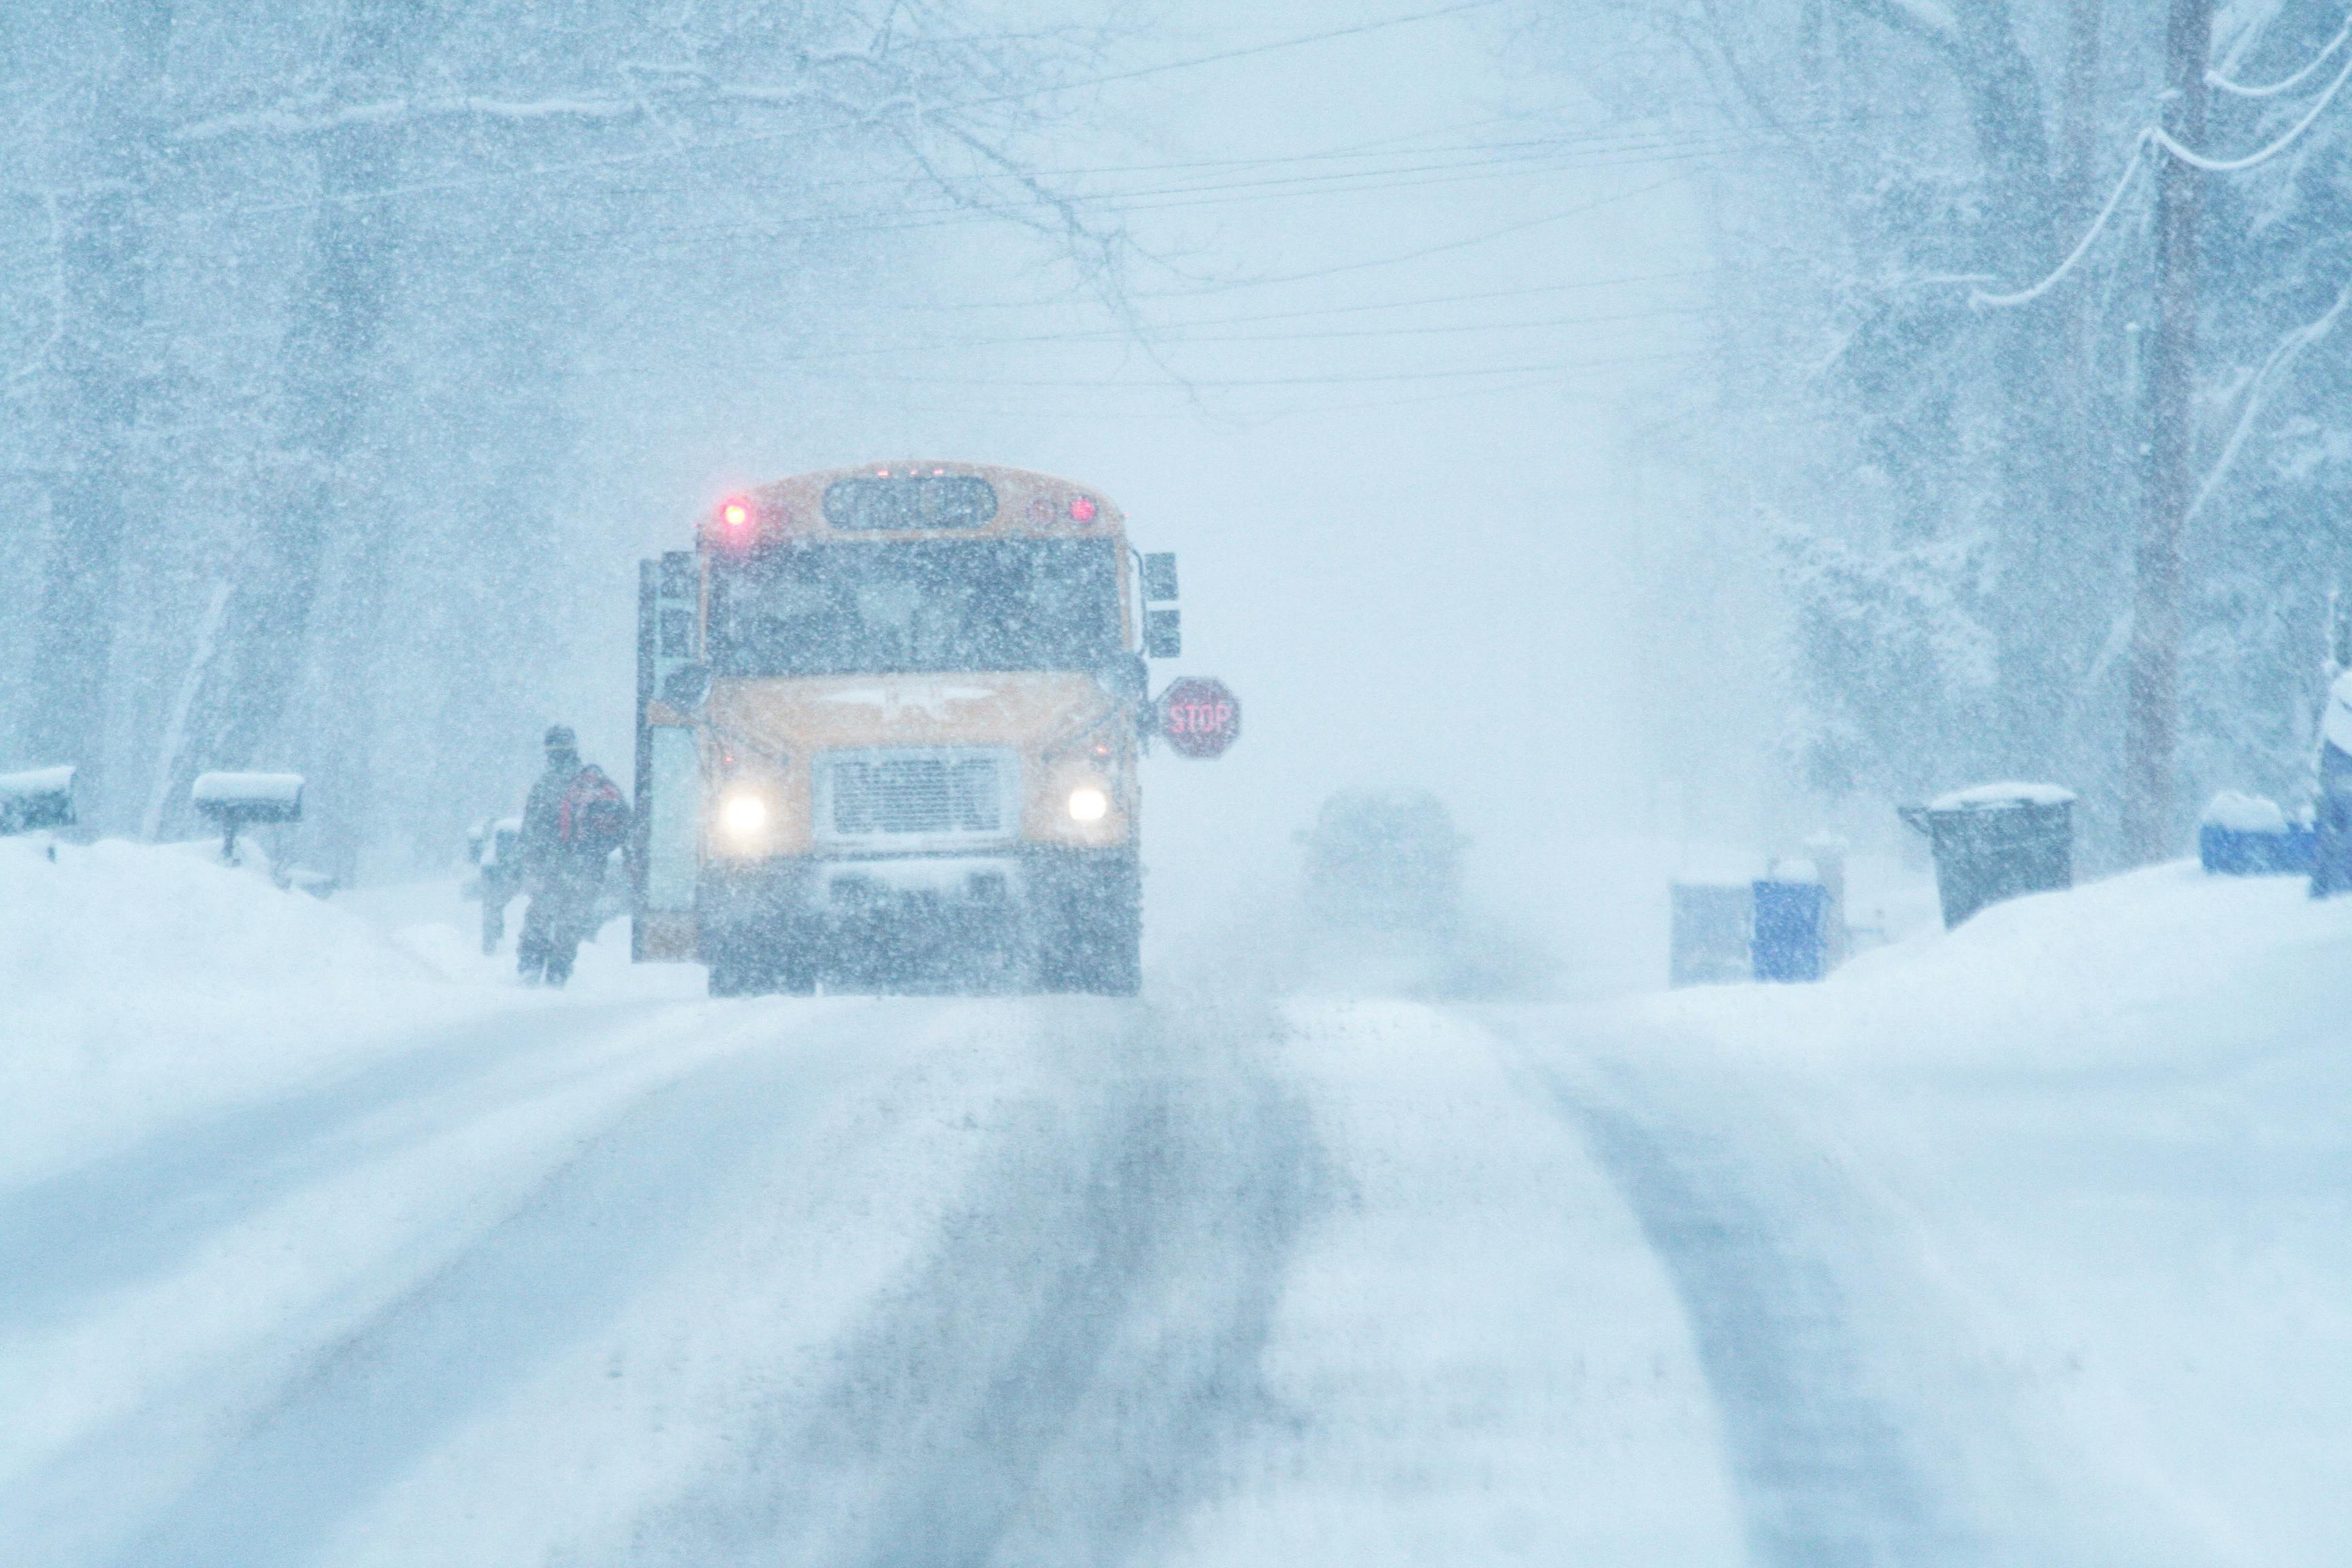 school bus in snow storm